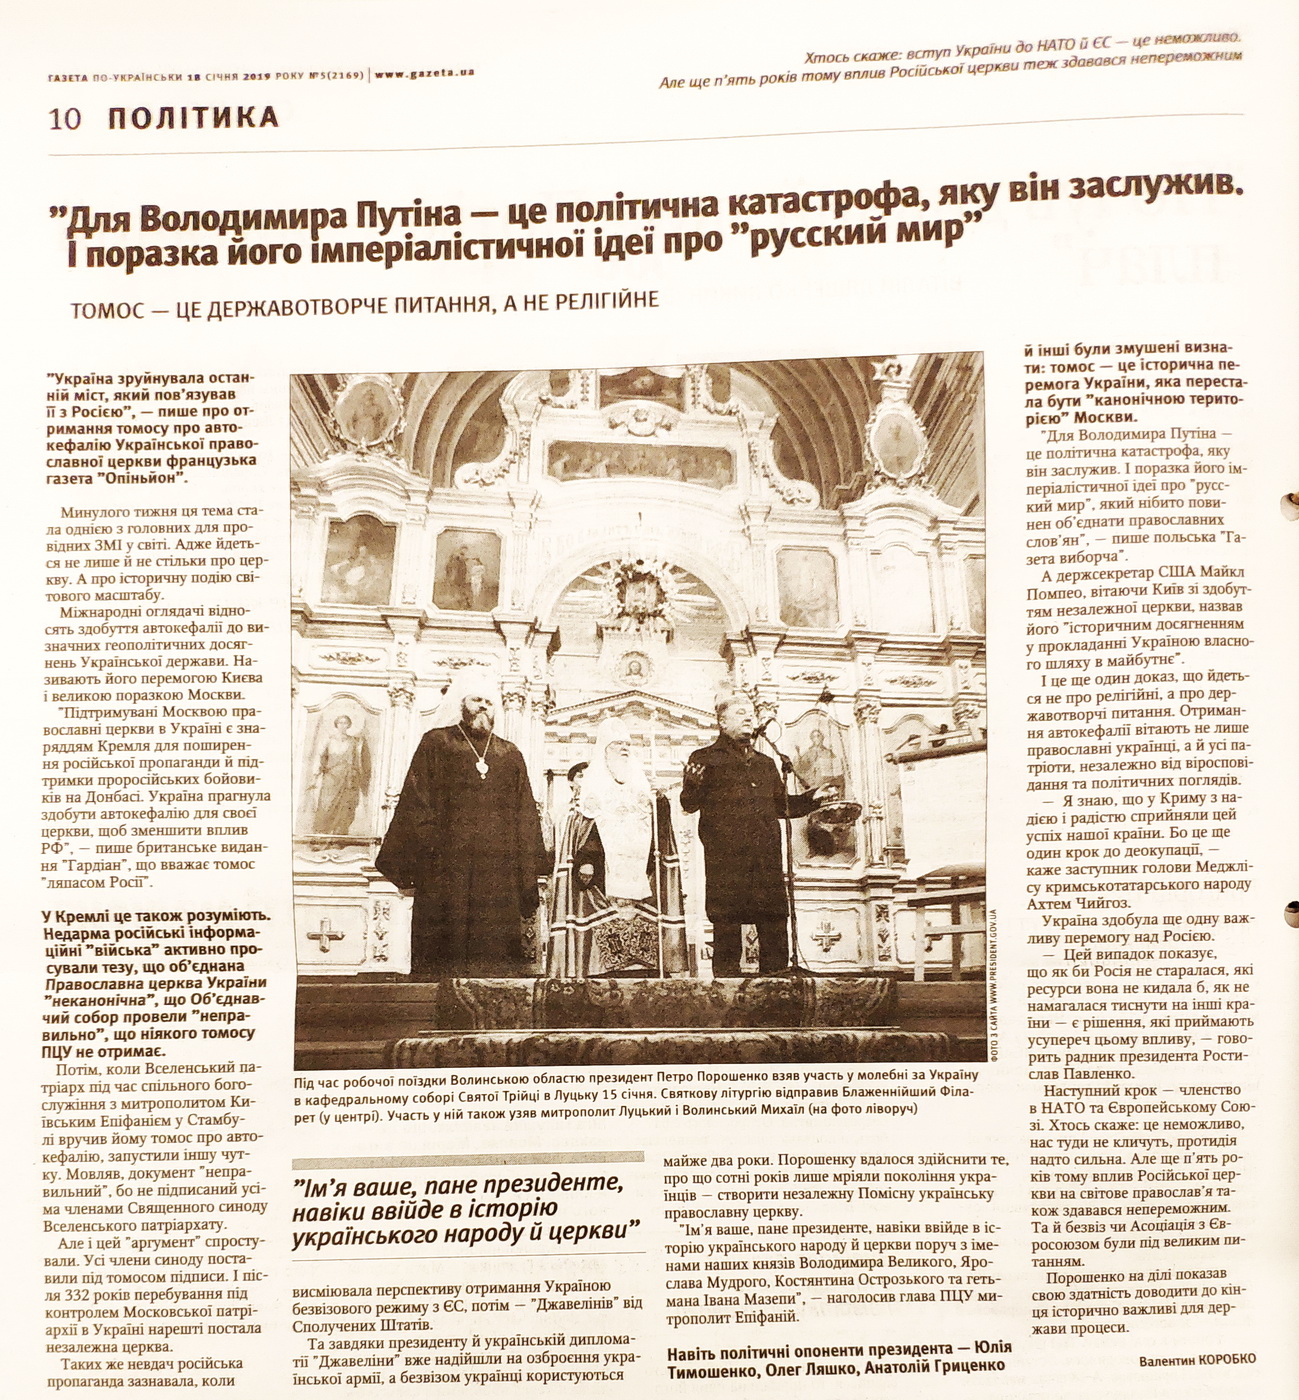 28 01 2019 Kyiv gazety dzynsa poroshenko5